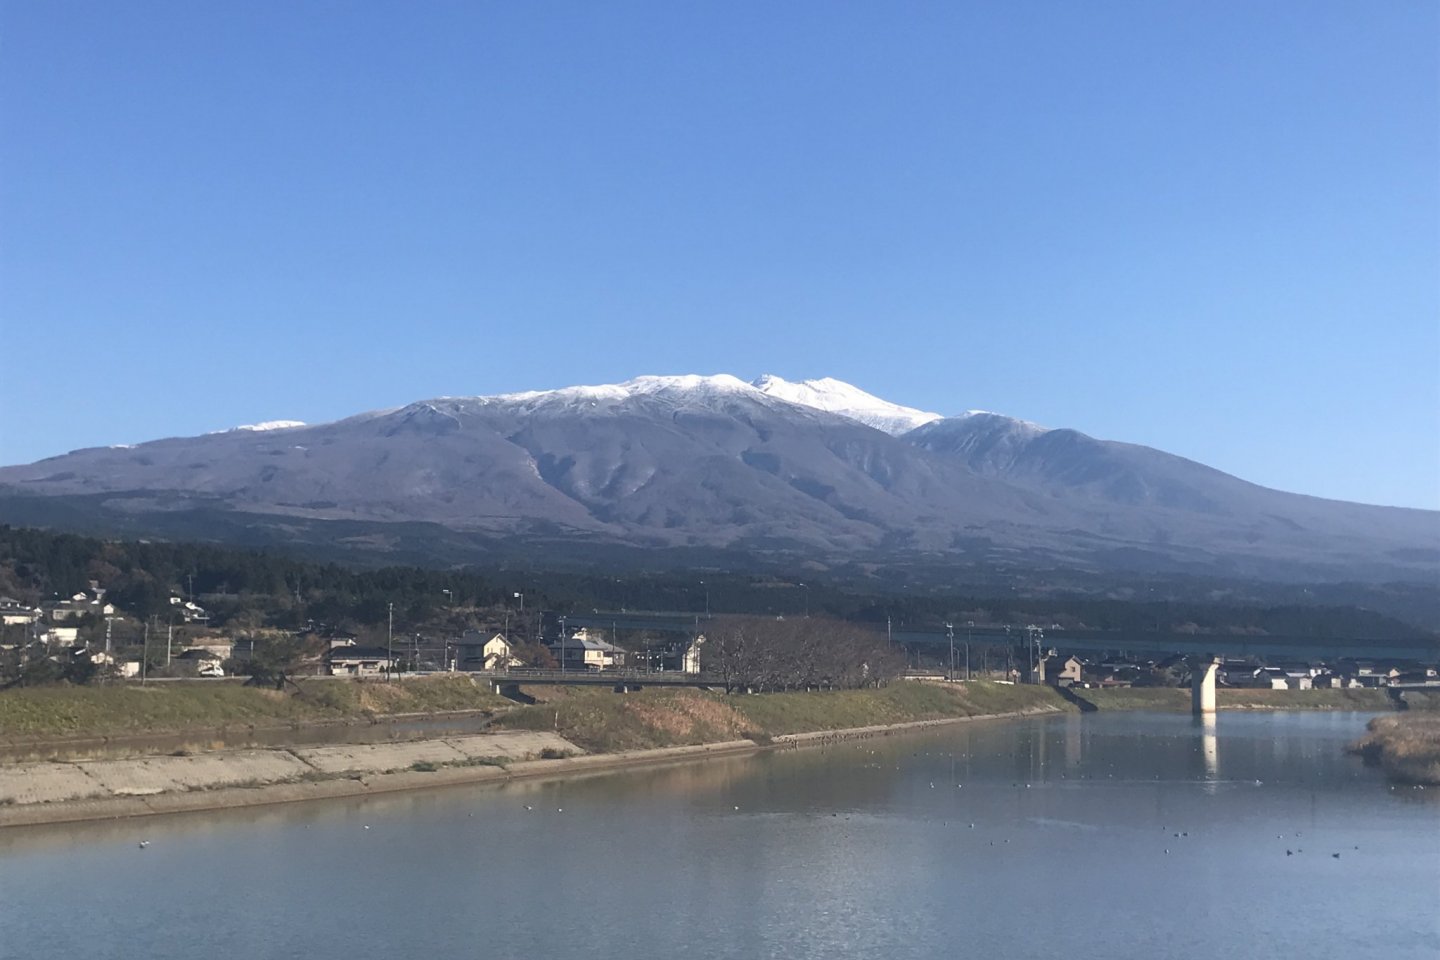 Mount Chokai